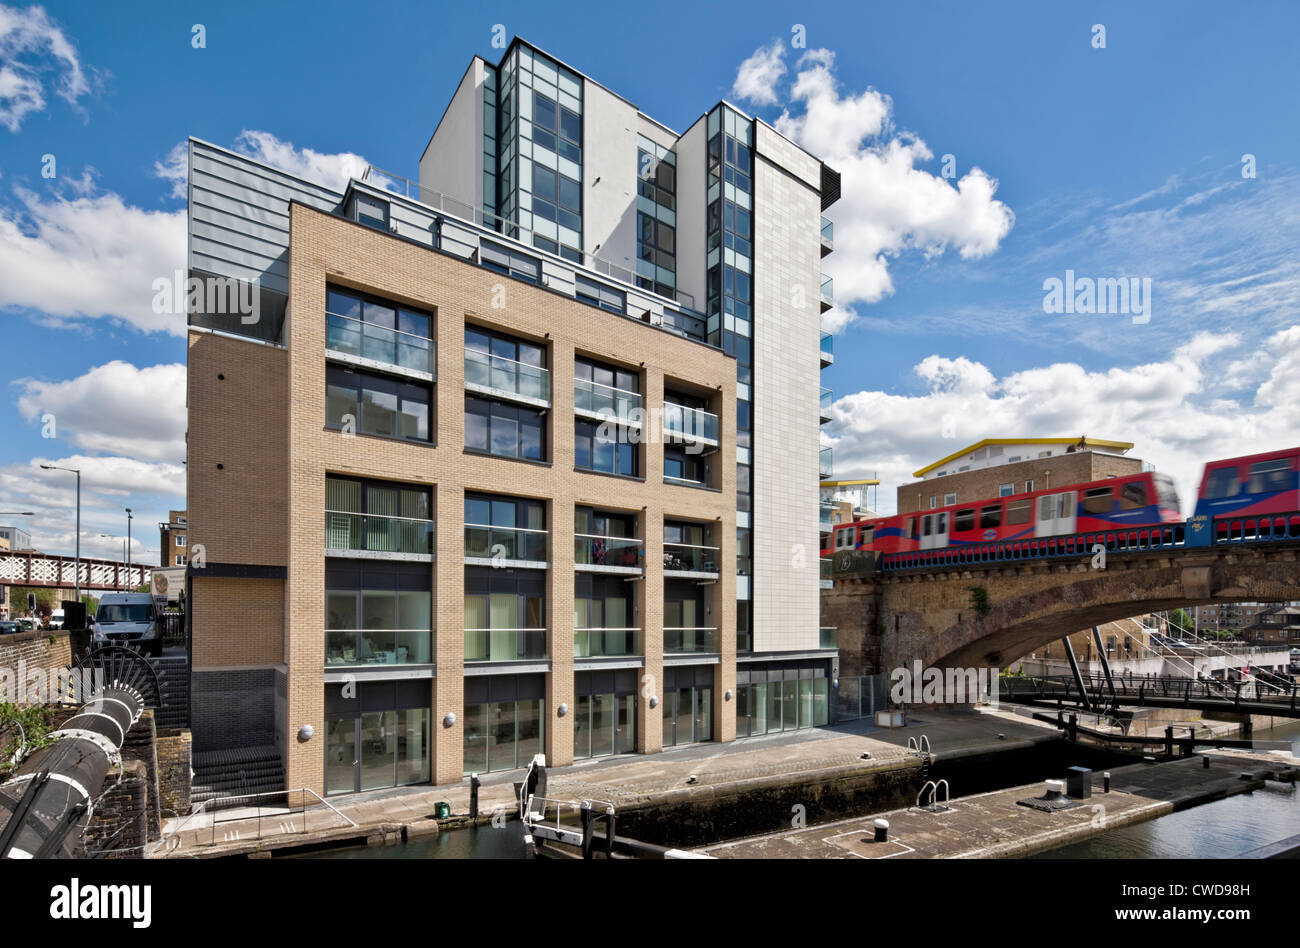 Bloqueo Limehouse apartamentos en la zona de Docklands, en Londres. Foto de stock